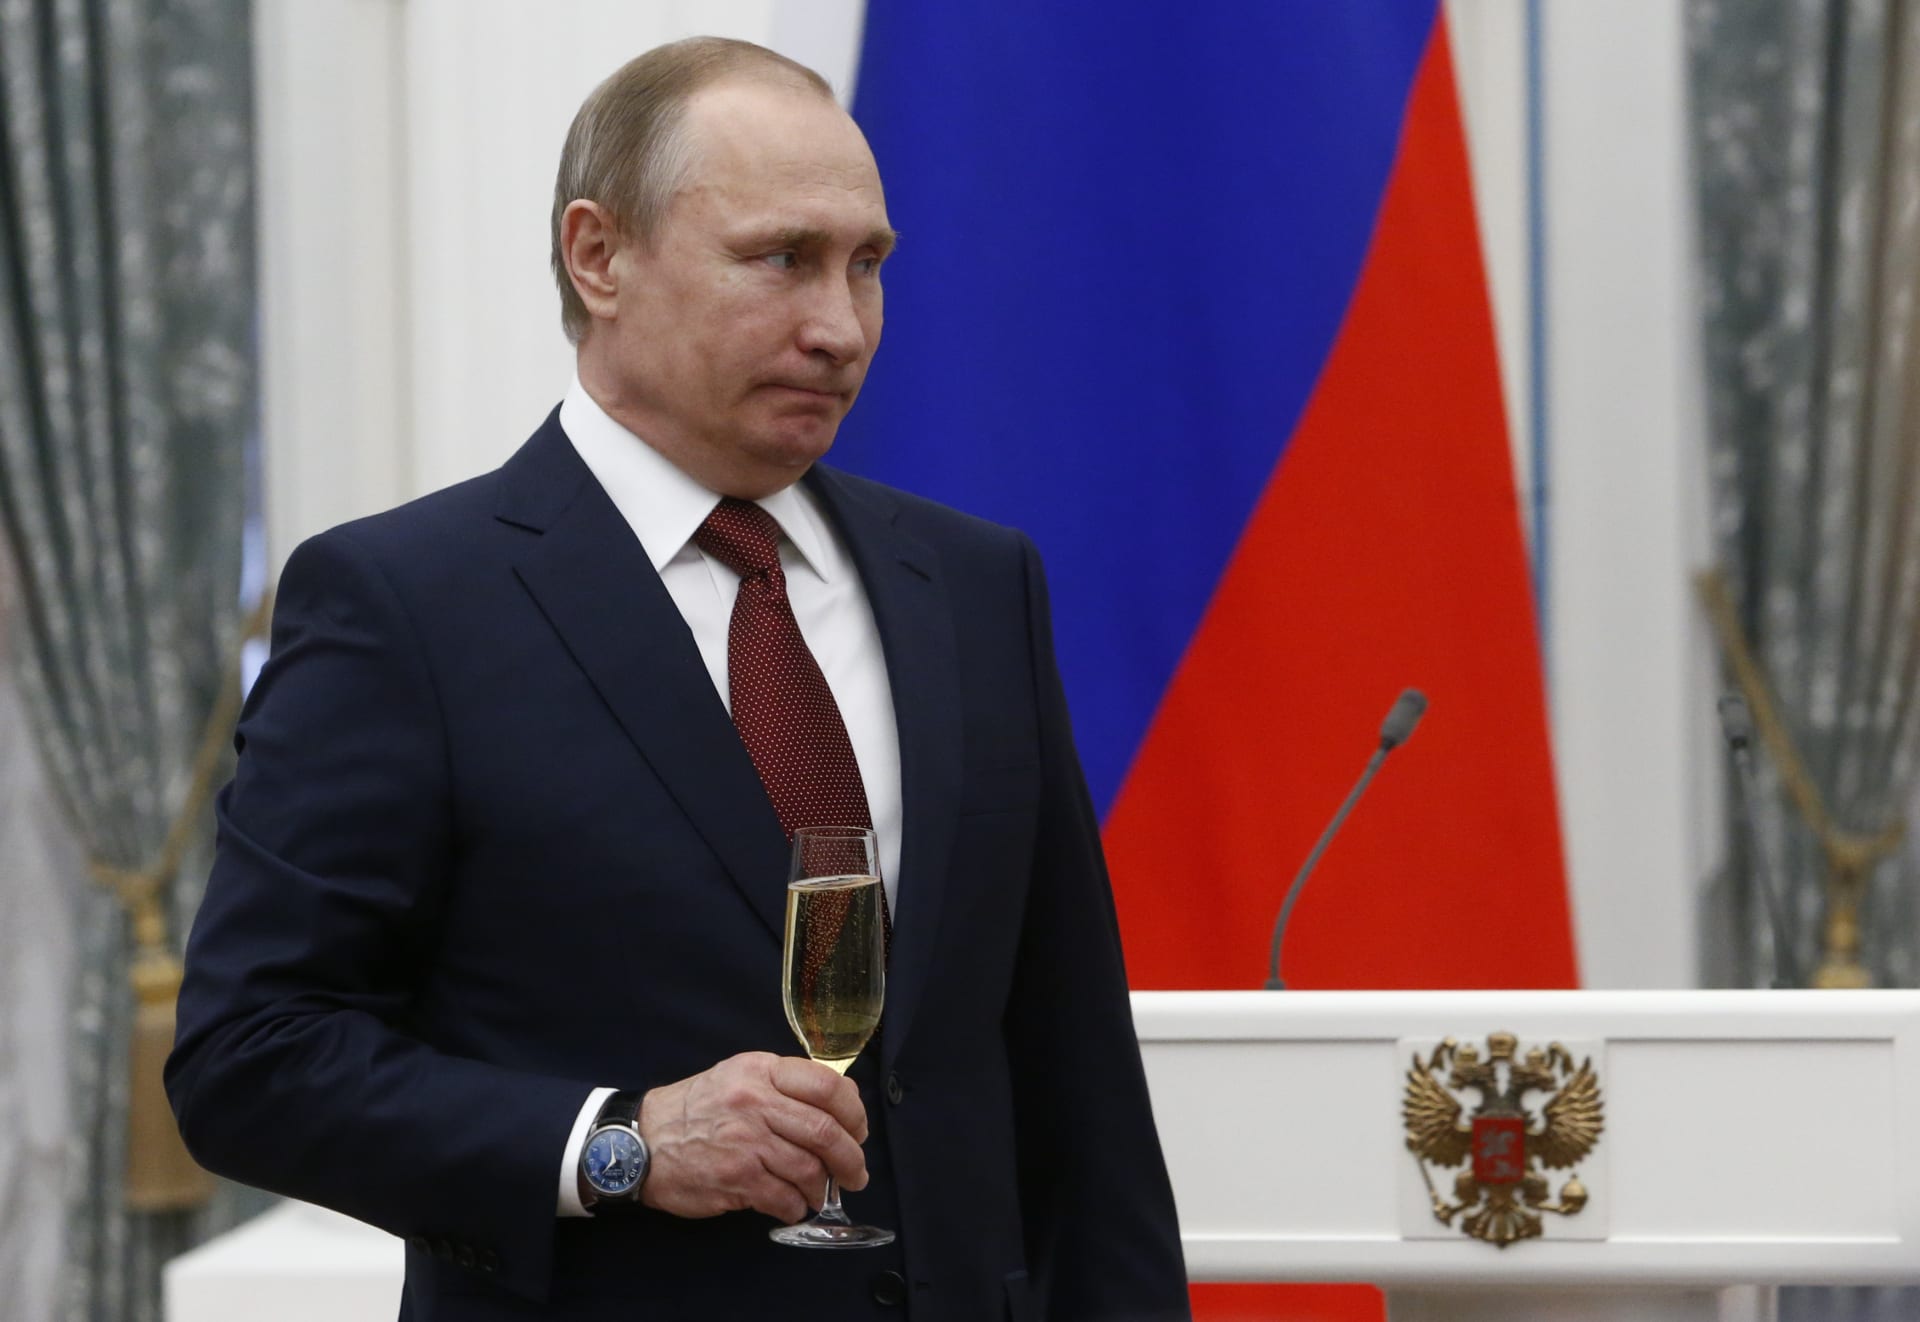 منحه بوتين لقب "بطل روسيا".. من هو "رامبو الروسي" وكيف هرب من قبضة "داعش"؟